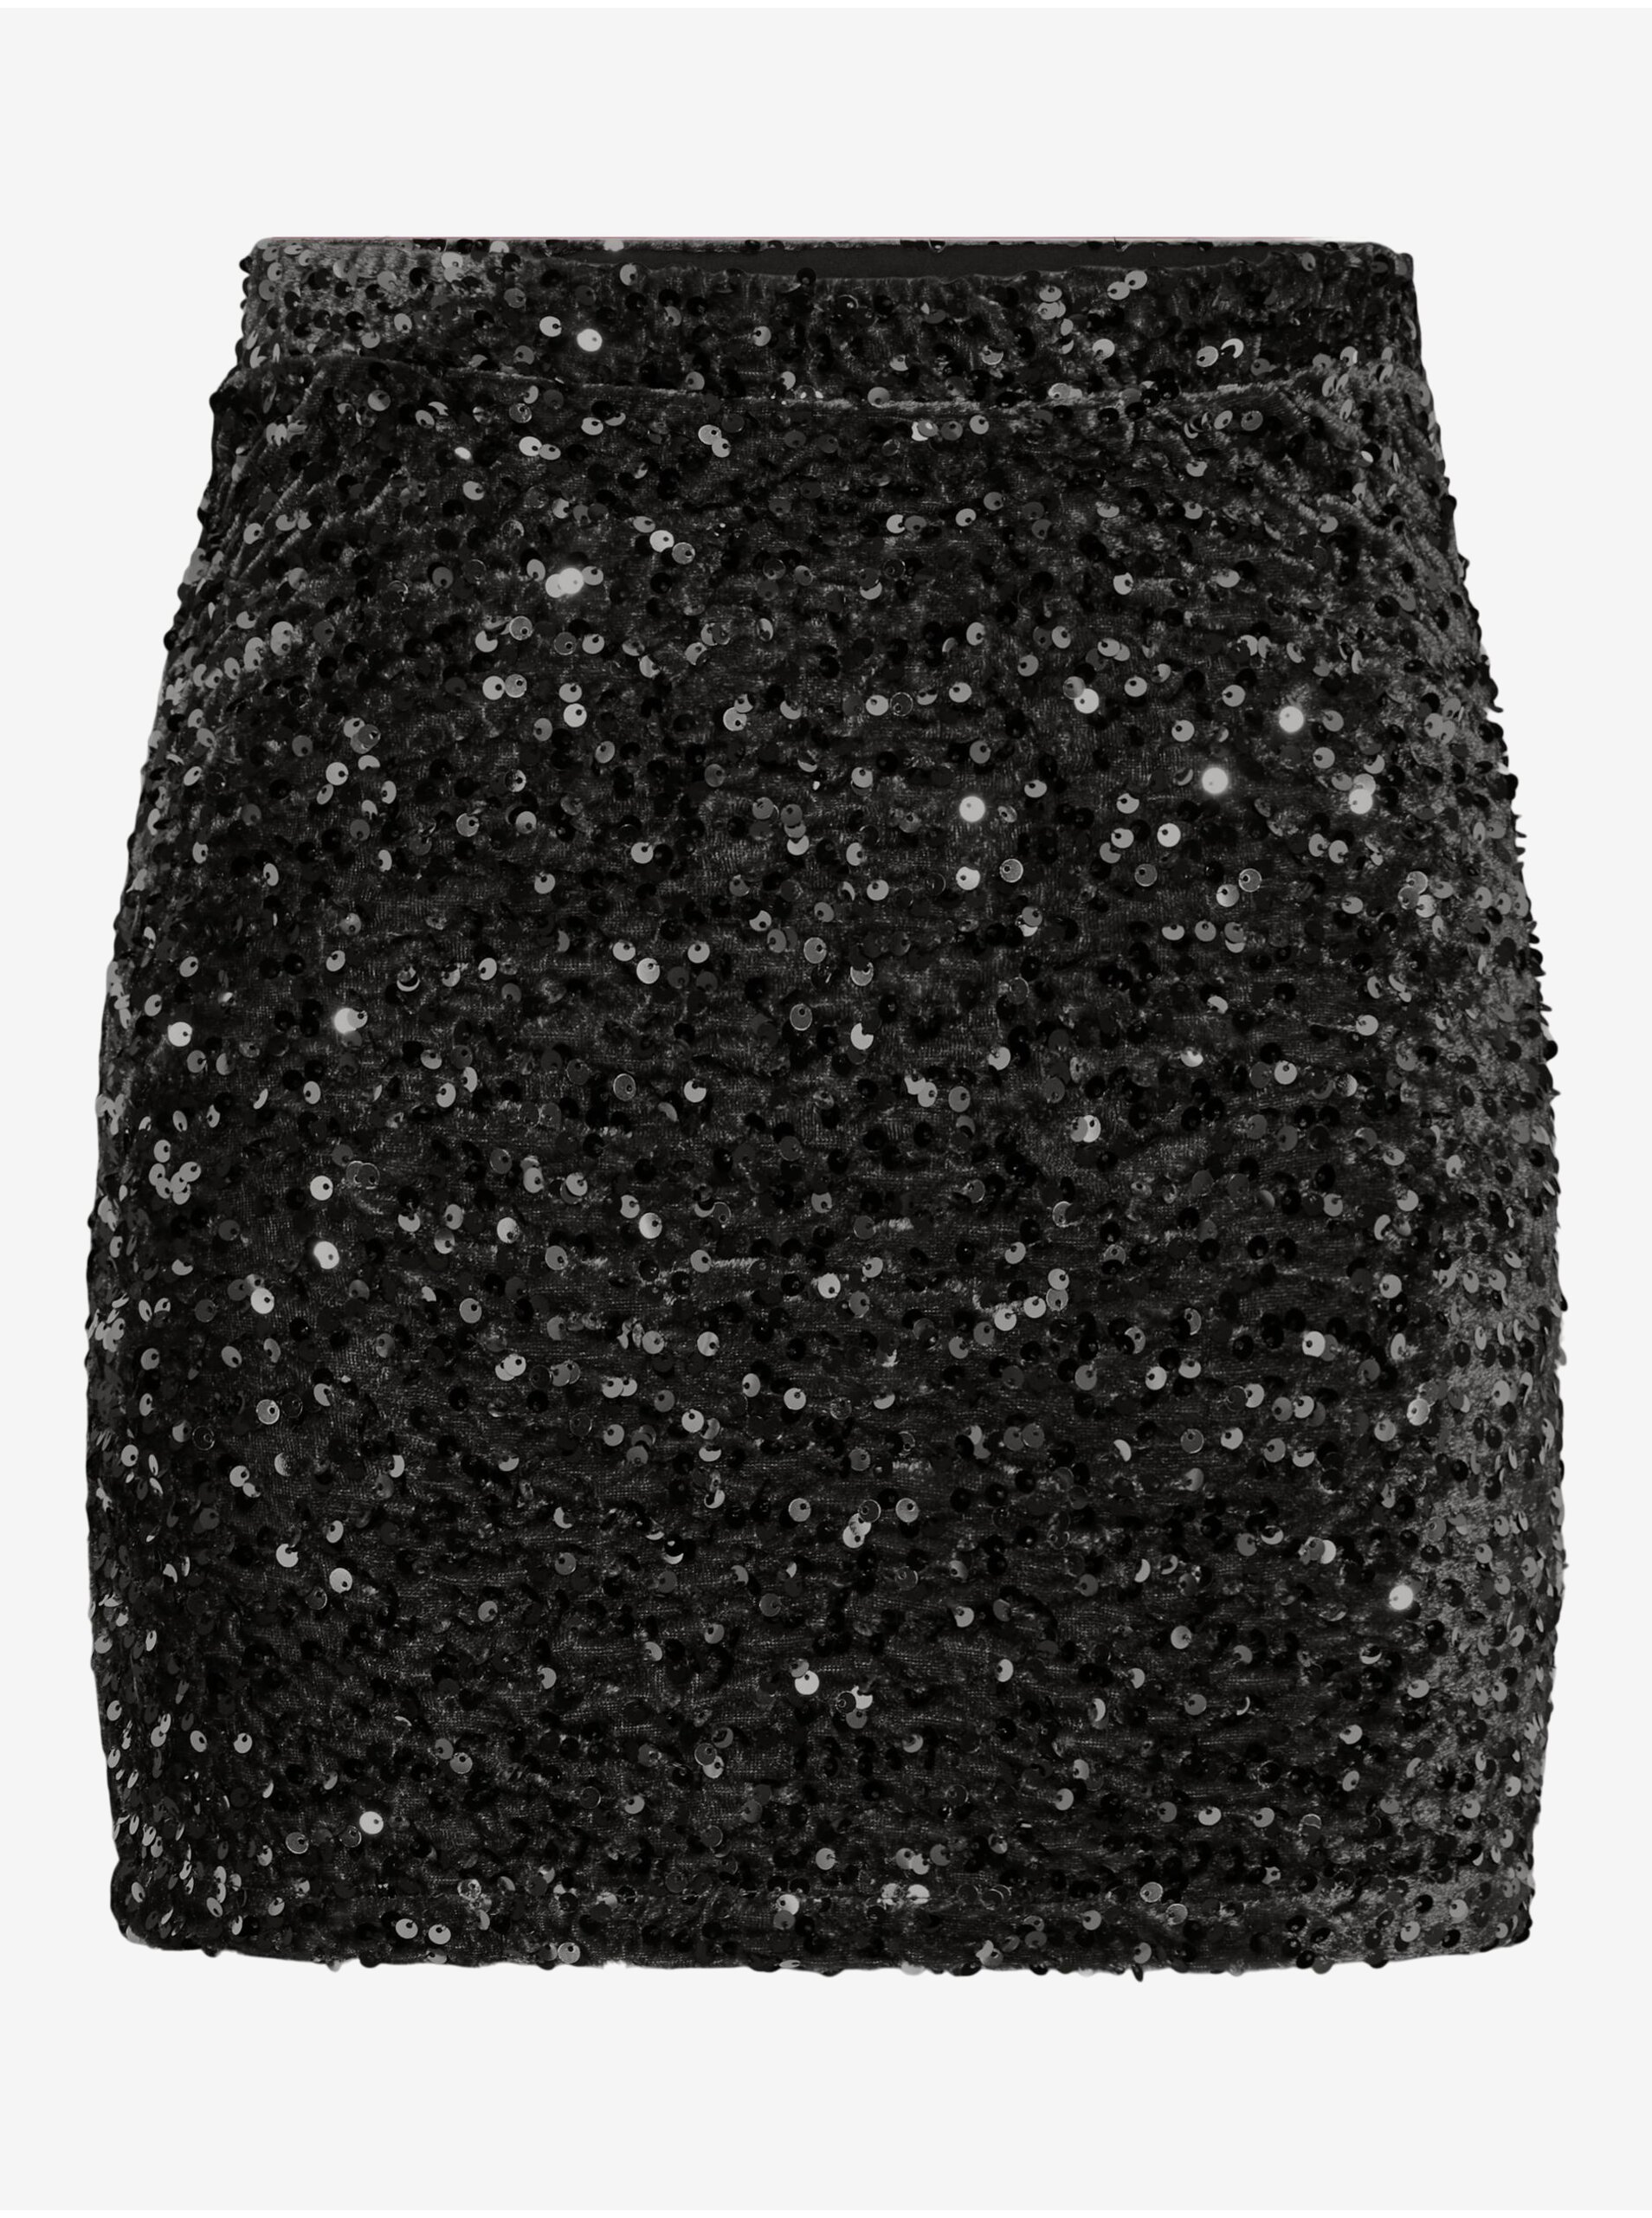 Women's Black Sequin Skirt Pieces Kam - Women